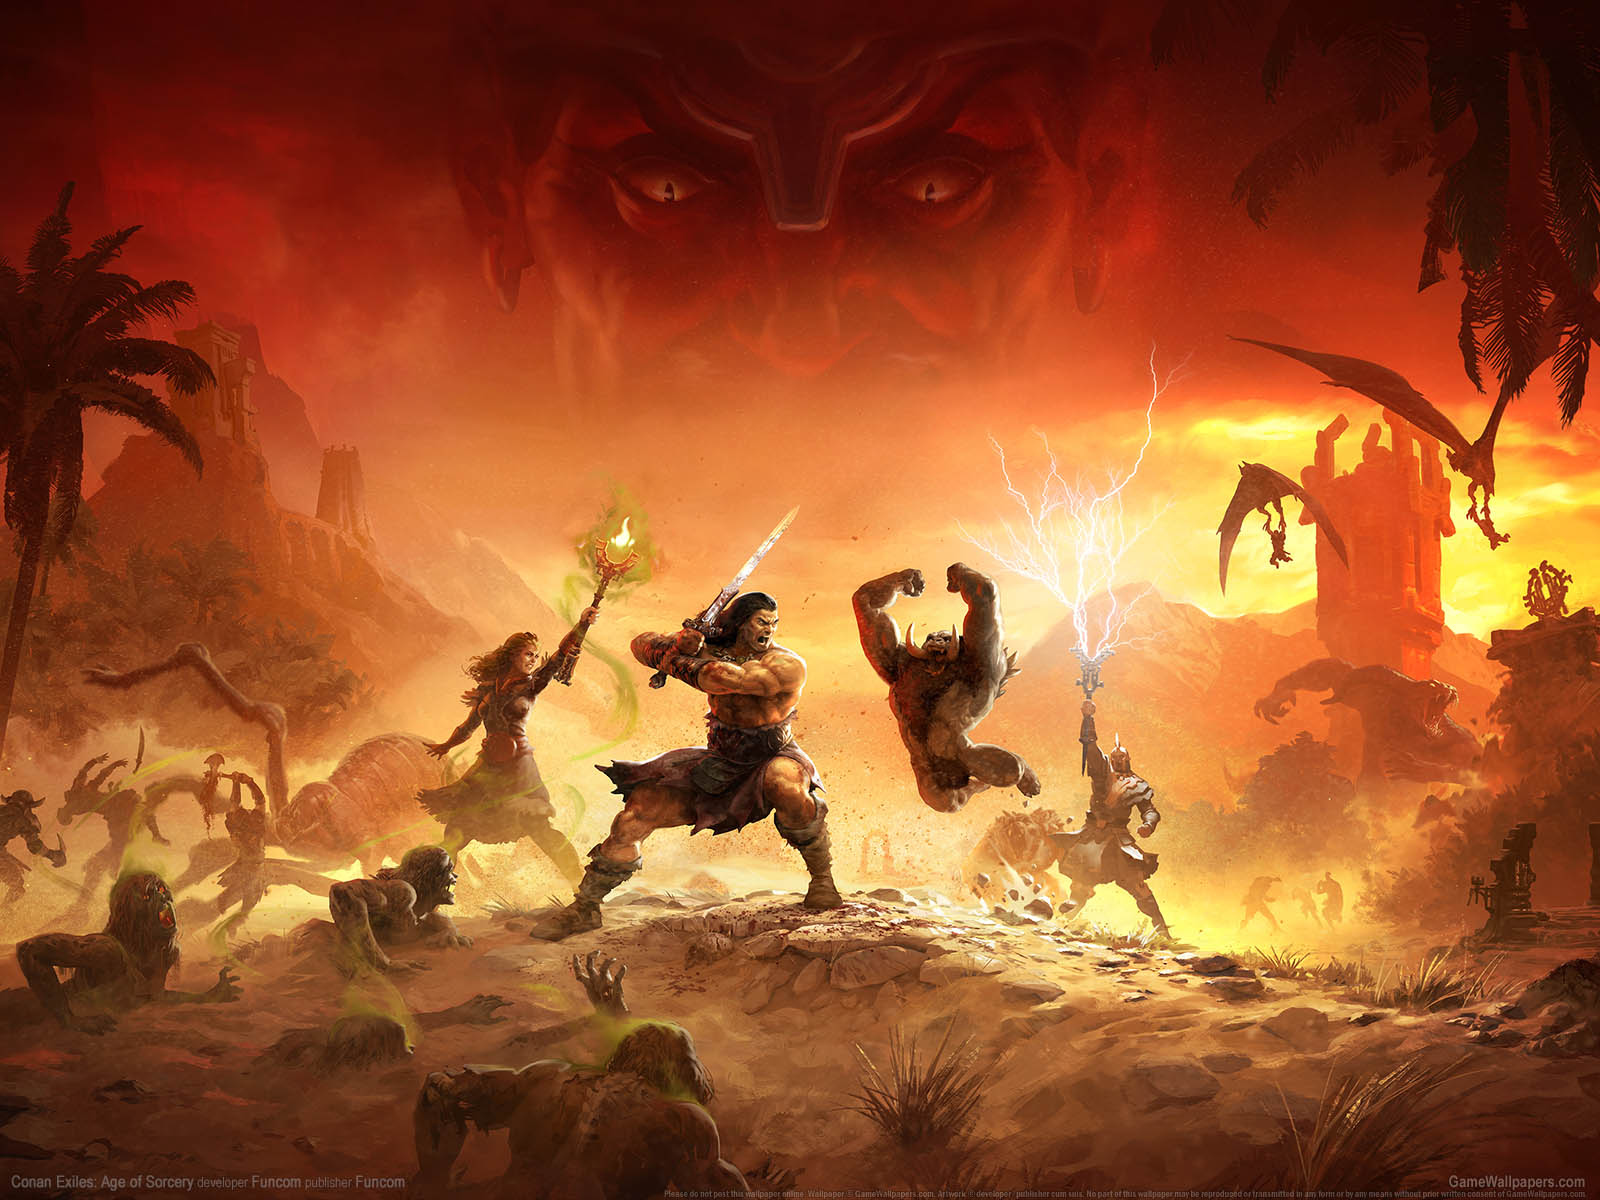 Conan Exiles%3A Age of Sorcery wallpaper 01 1600x1200